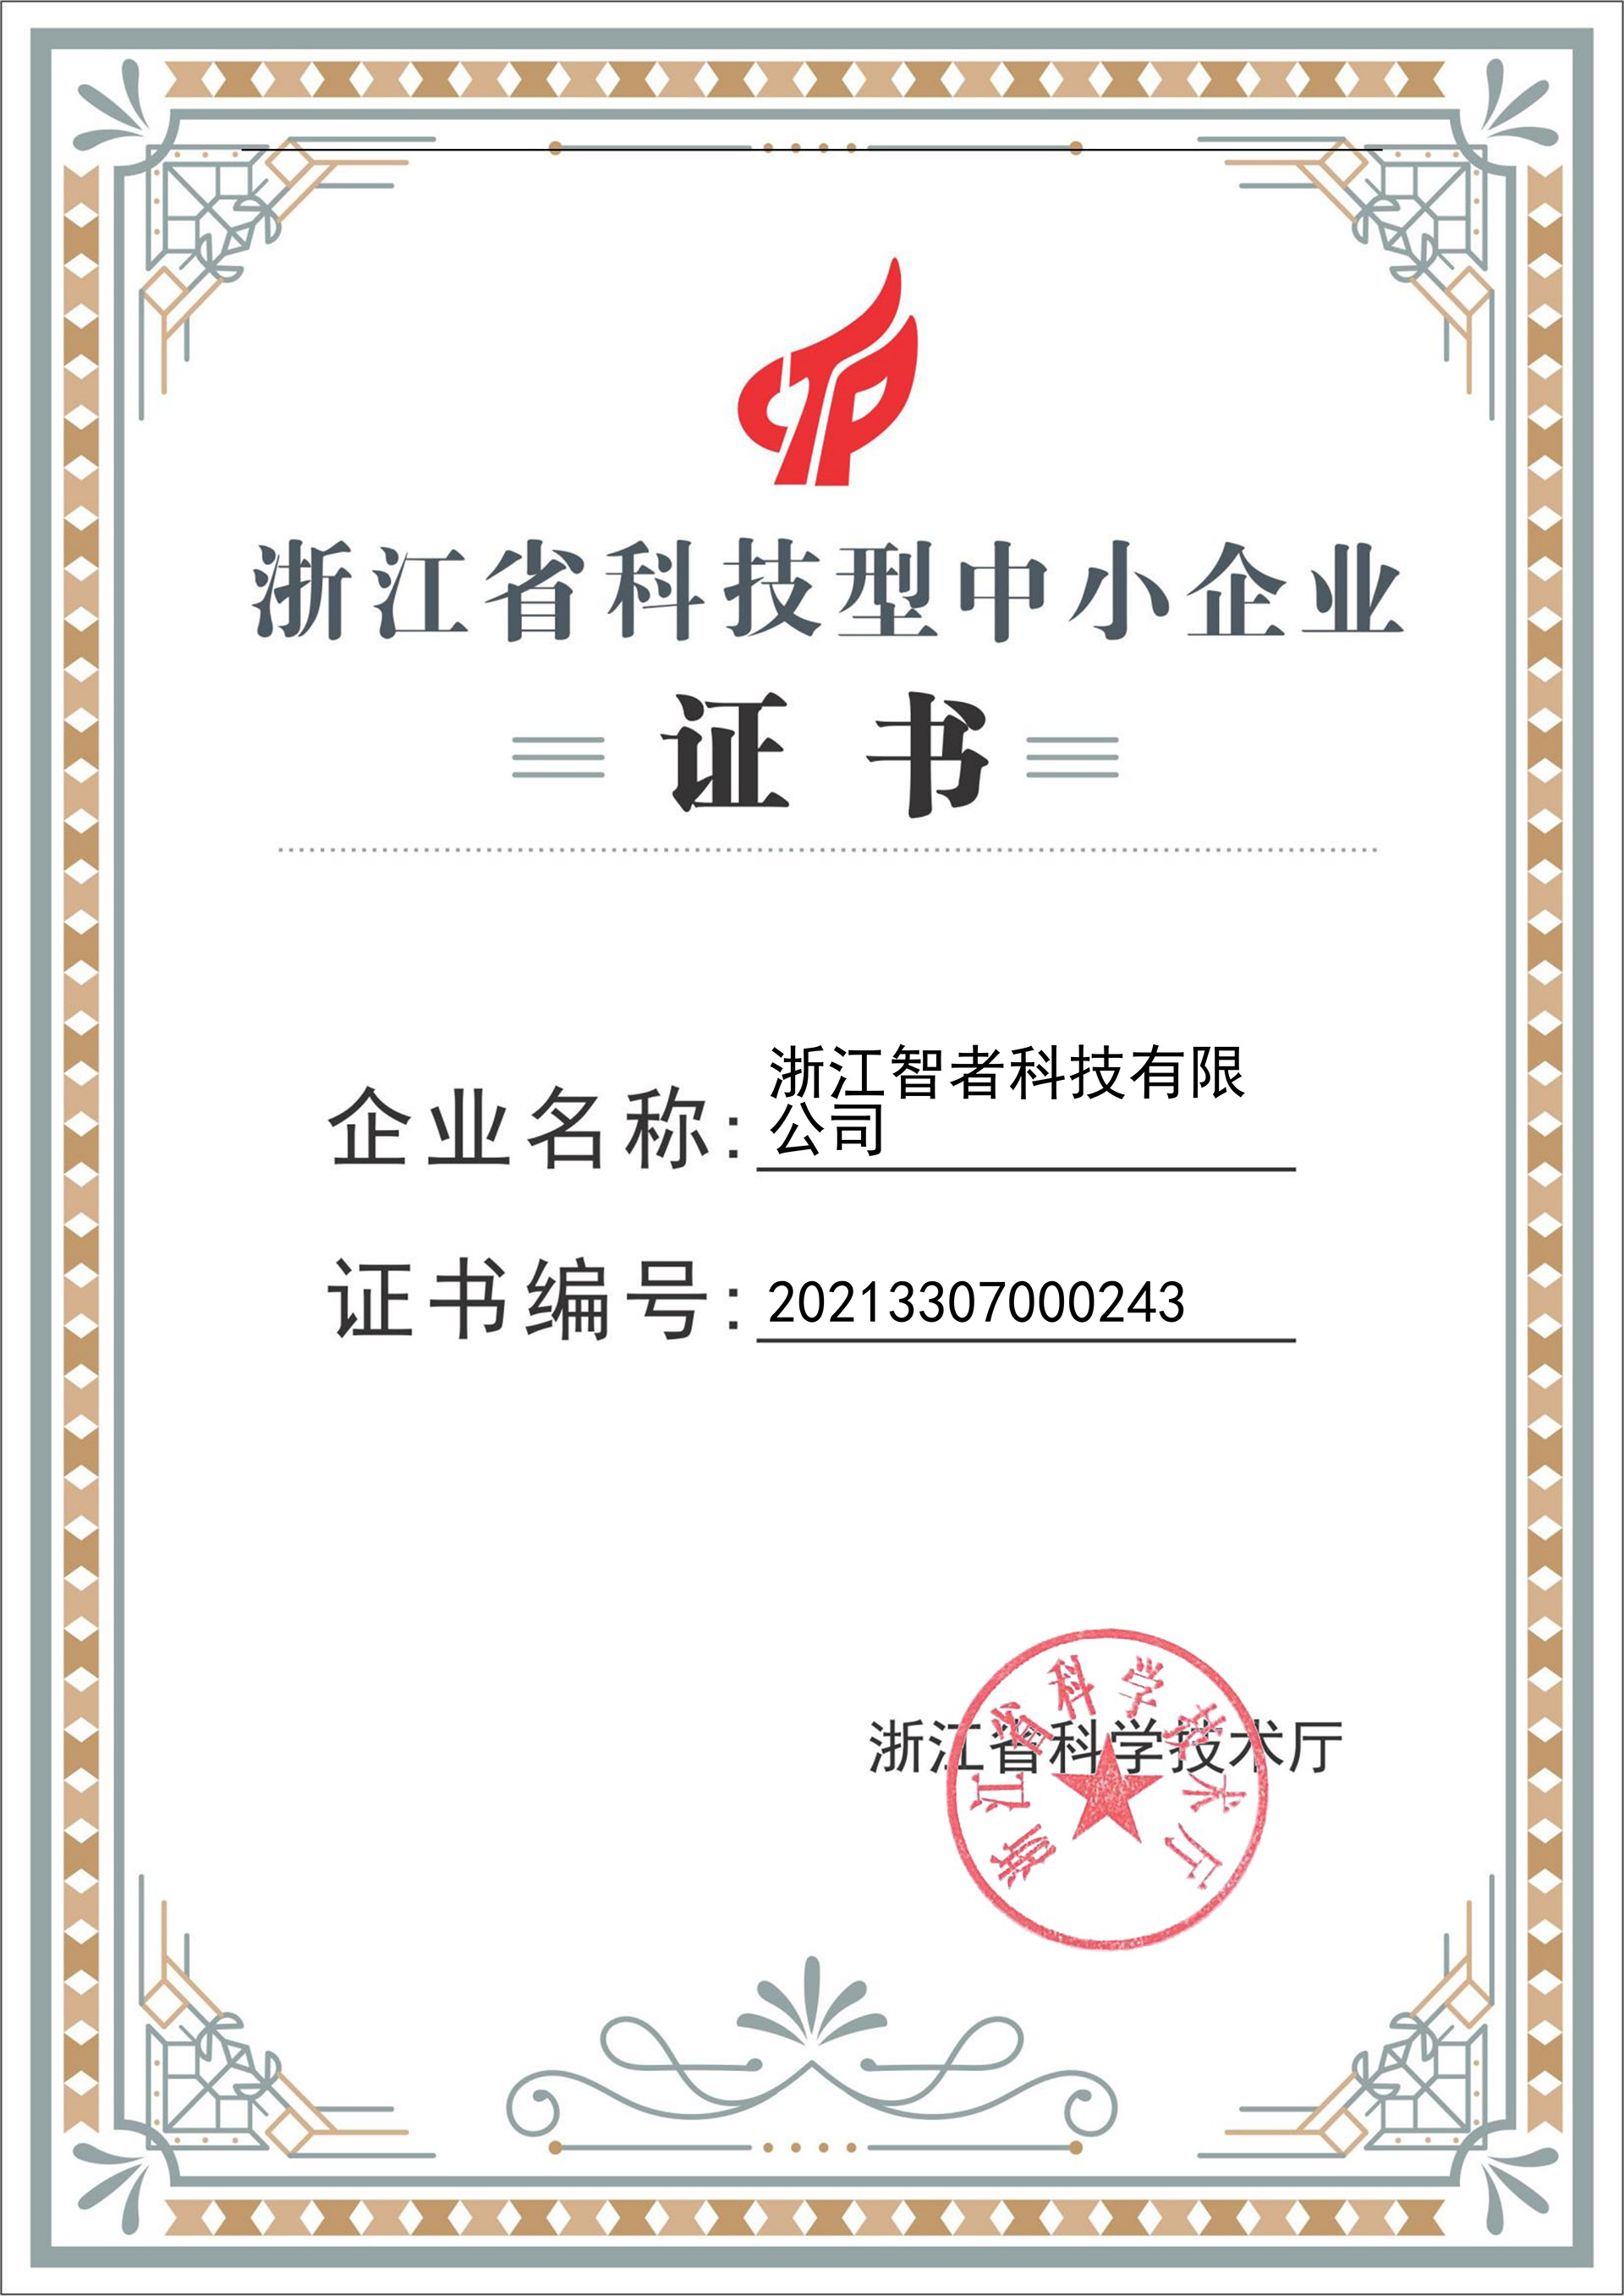 熱烈祝賀我司榮獲“浙江省科技型中小企業”認證證書